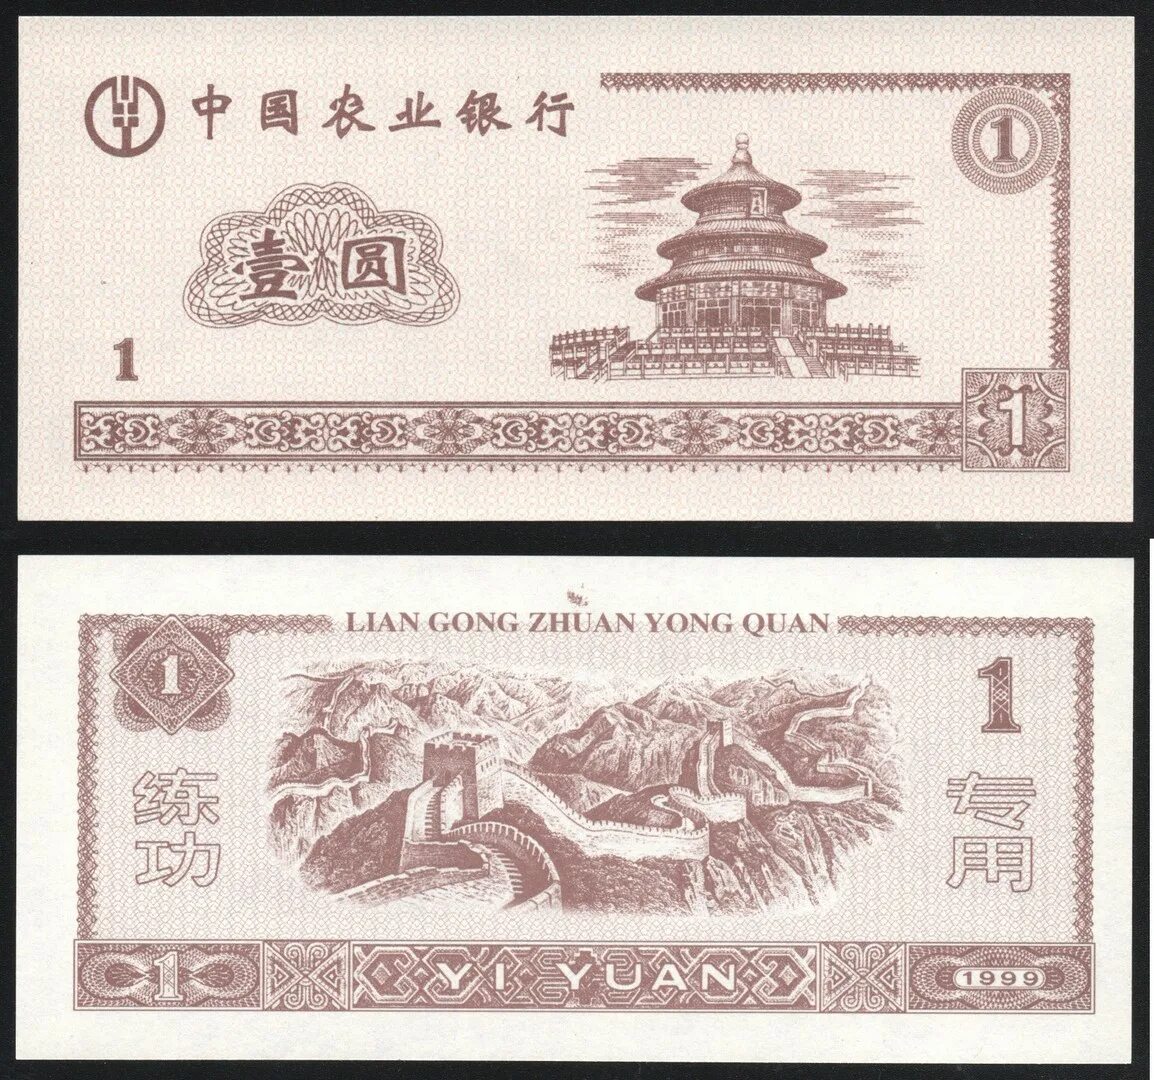 Китайские банкноты 1 Yuan 1999. Банкнота Китая Lian Gong. 1 Юань 1999 года. Китайская валюта в рублях.